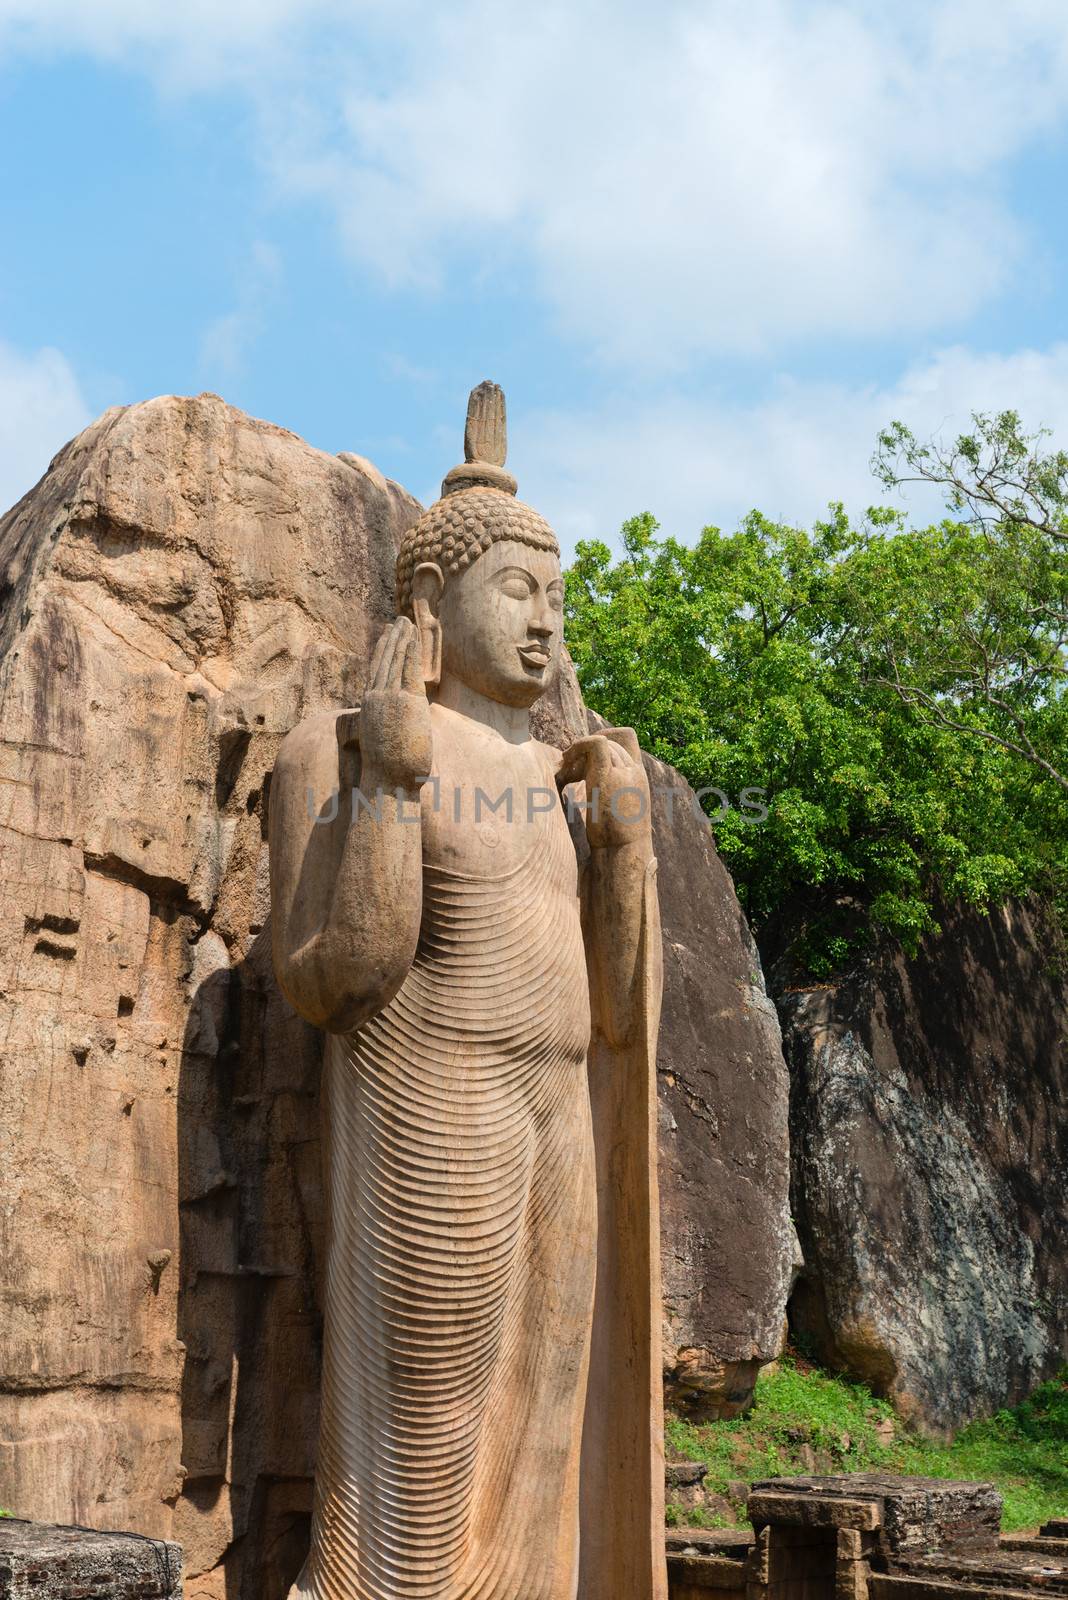 Avukana standing Buddha statue, Sri Lanka. by iryna_rasko